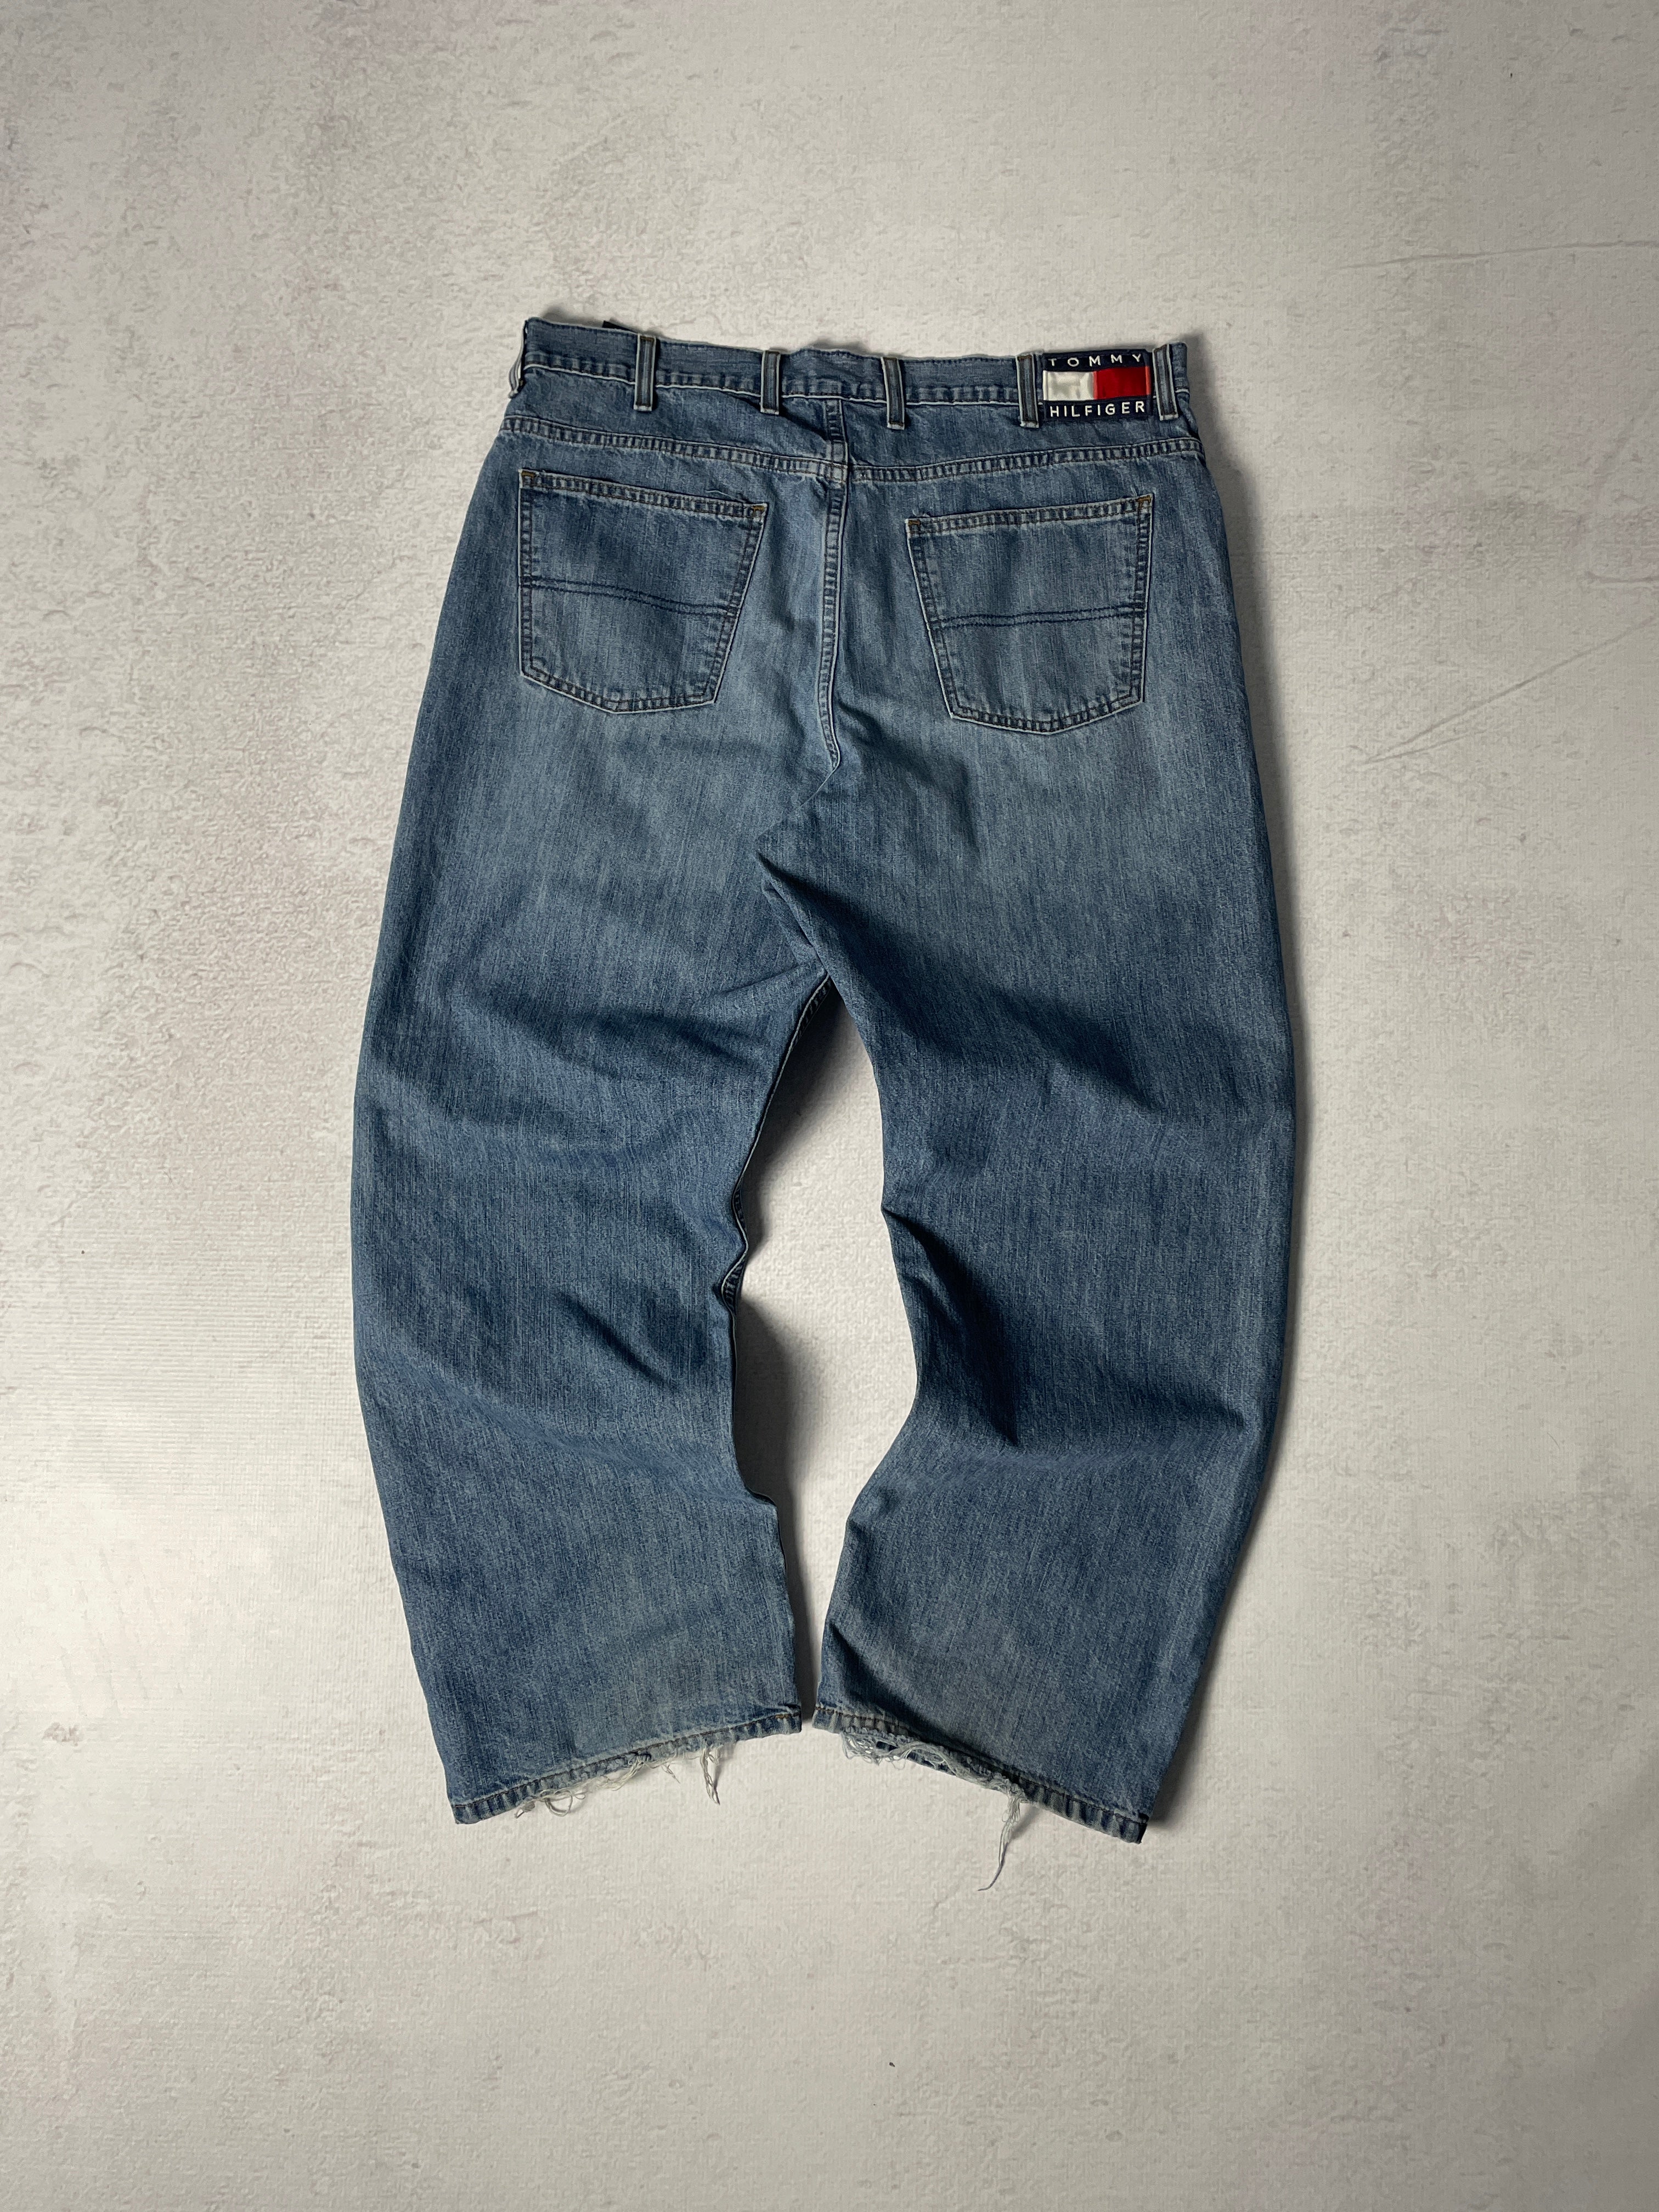 Vintage Tommy Hilfiger Jeans - Men's 38 x 30